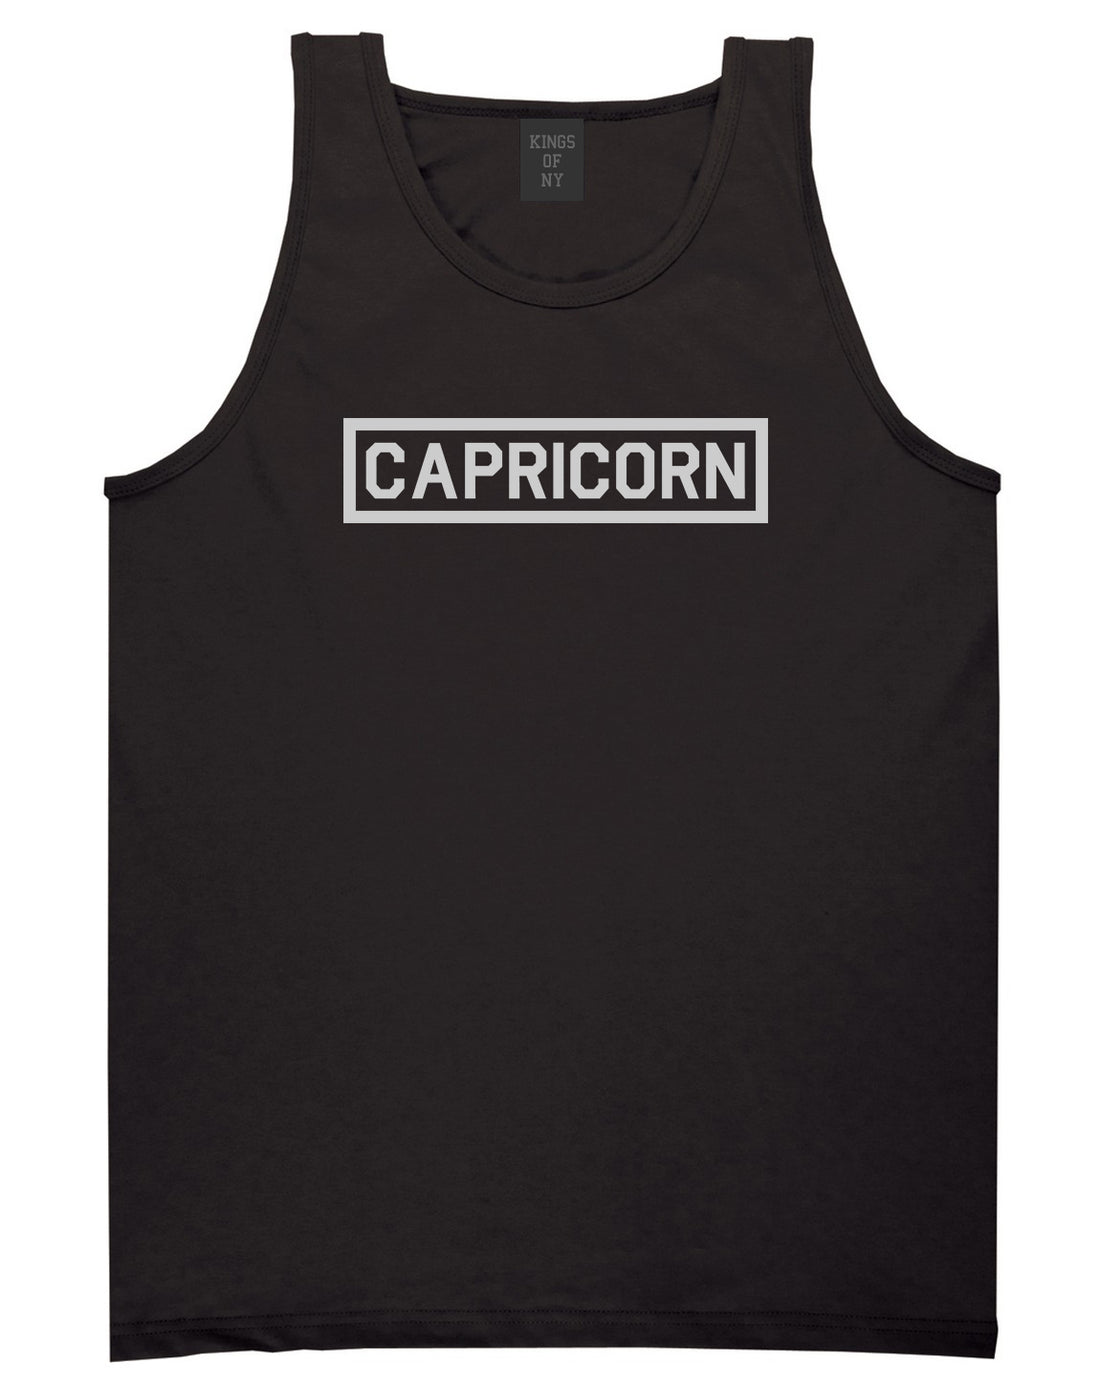 Capricorn Horoscope Sign Mens Black Tank Top Shirt by KINGS OF NY